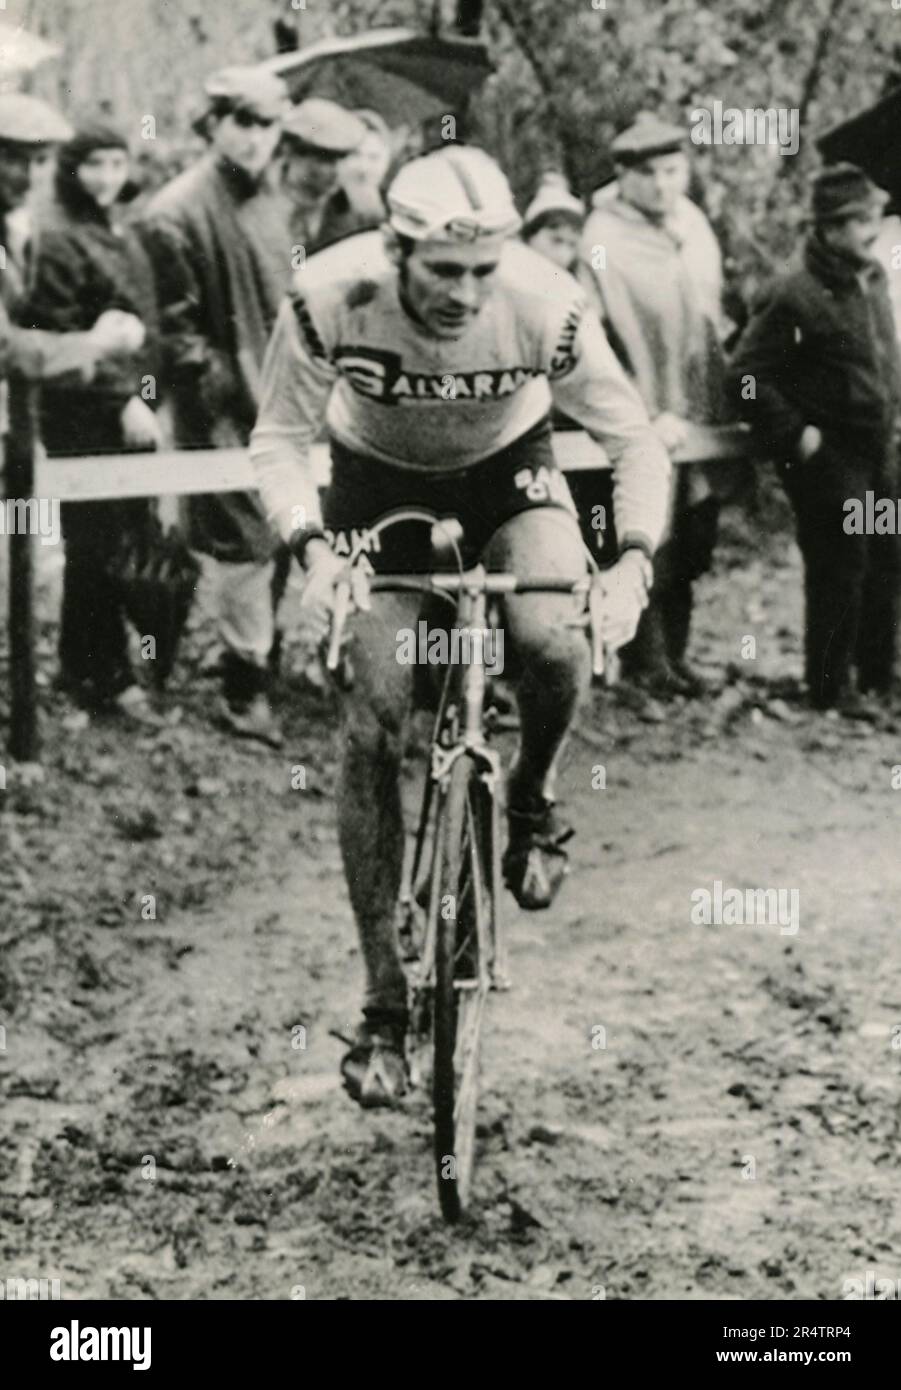 Le coureur cycliste italien Felice Gimondi au Paris-Roubaix, France 1966 Banque D'Images